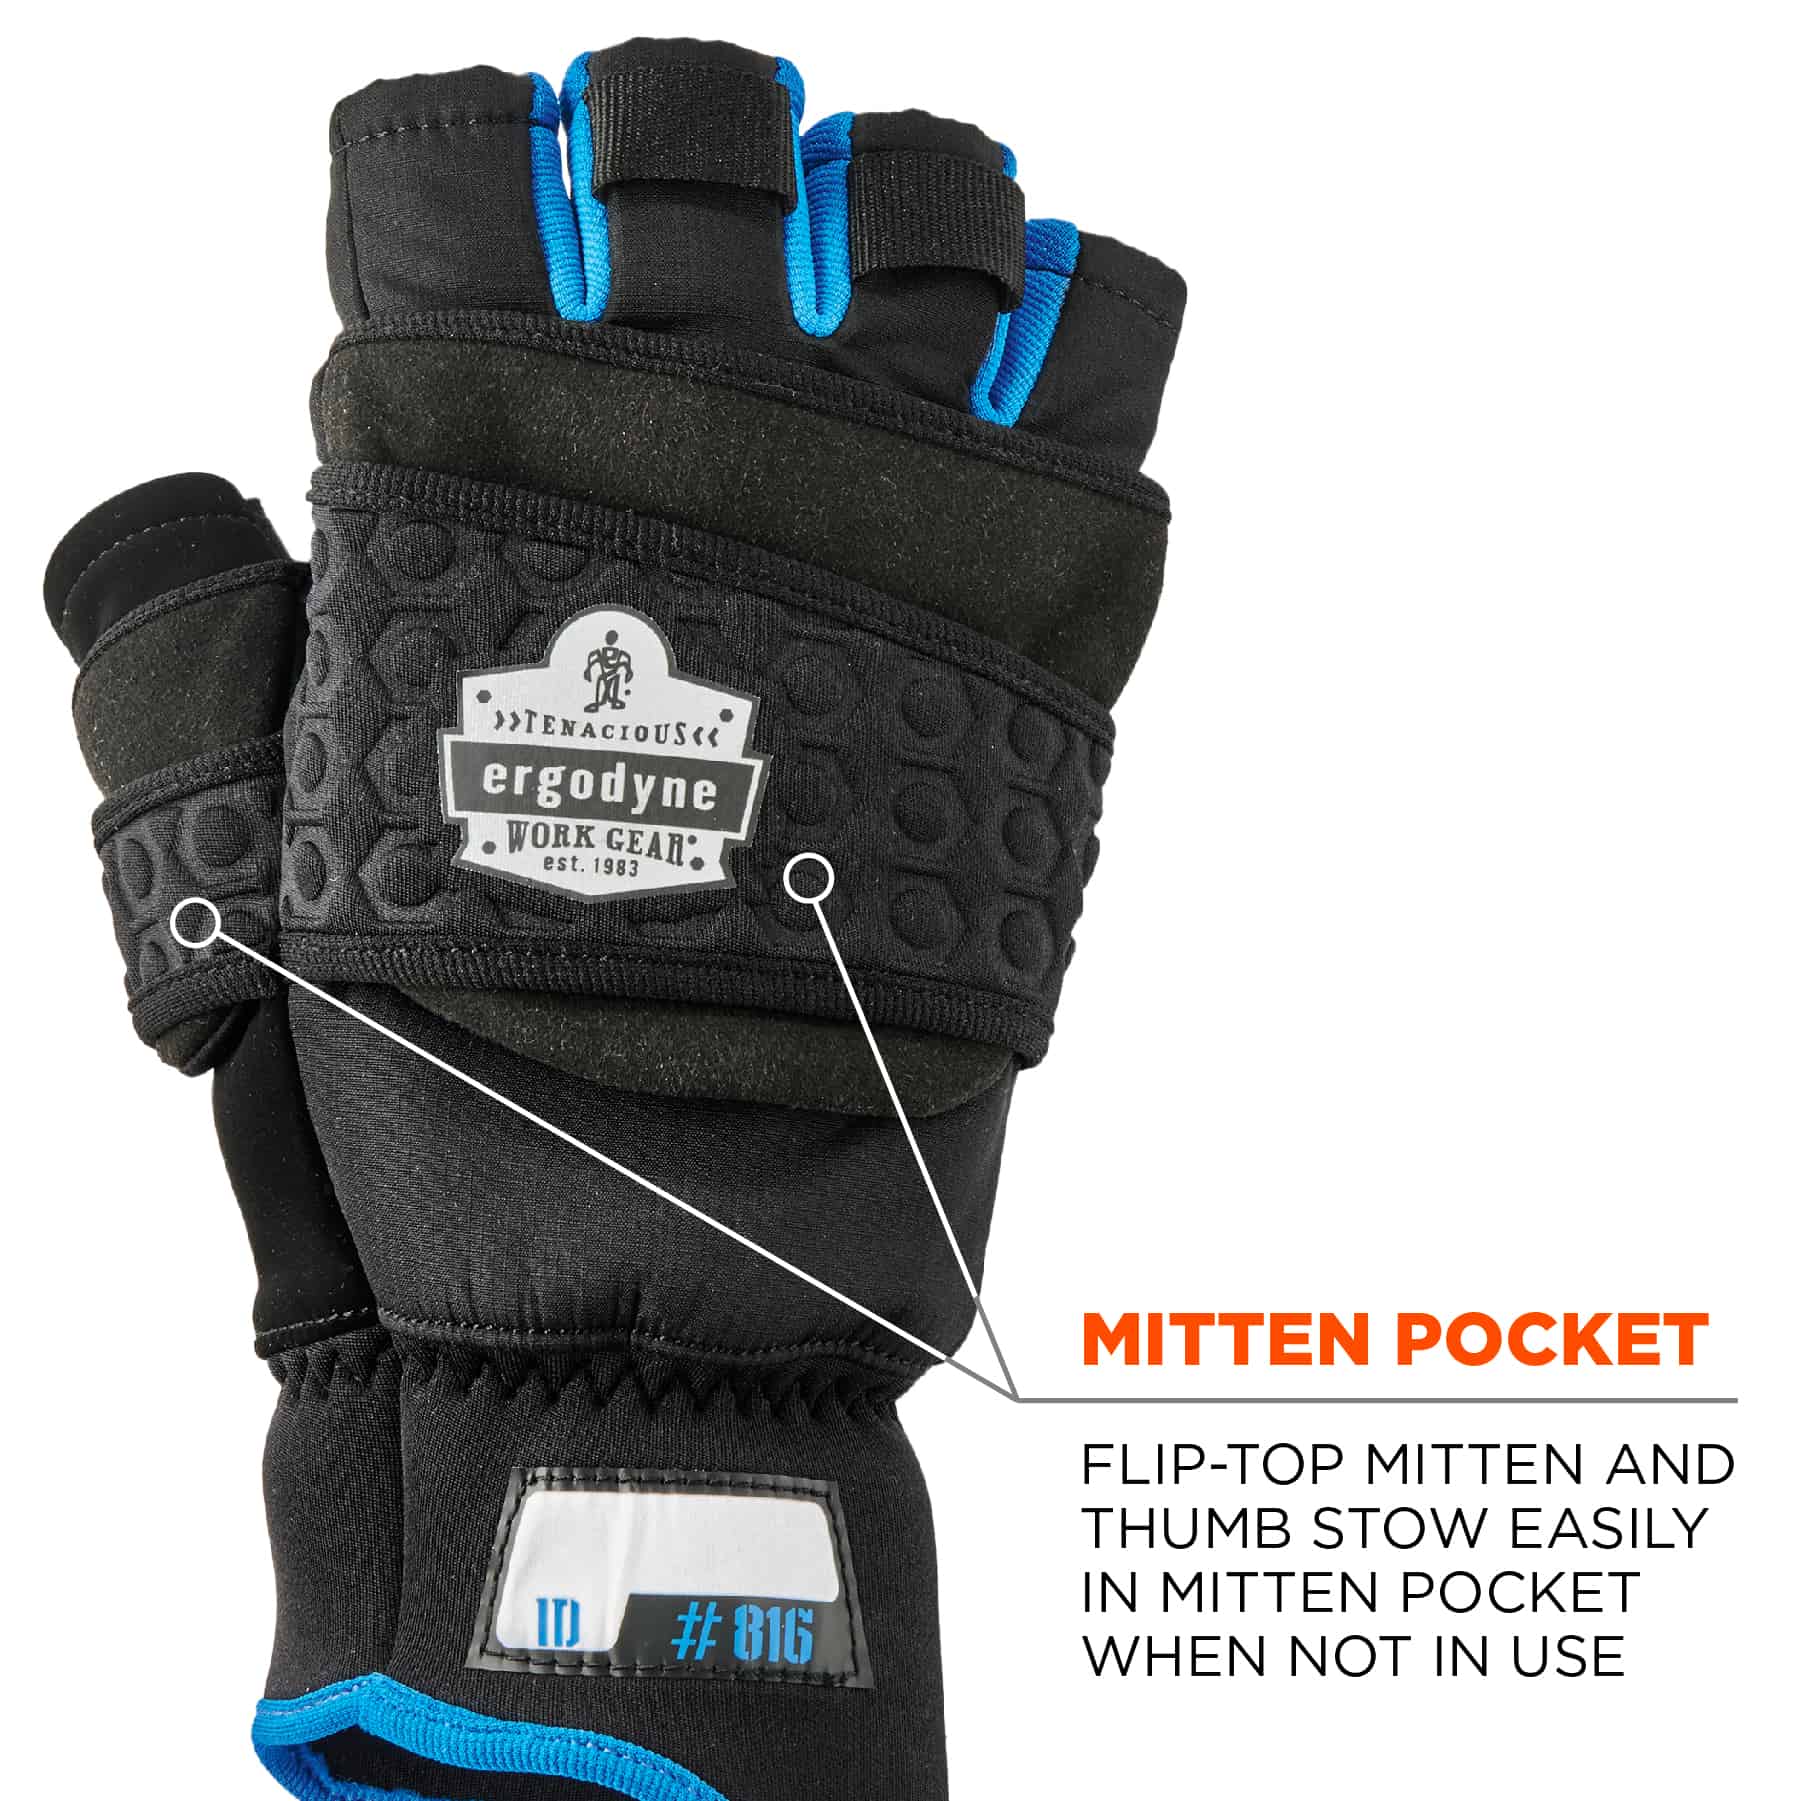 https://www.ergodyne.com/sites/default/files/product-images/17342-816-thermal-fingerless-winter-work-gloves-black-mitten-pocket.jpg